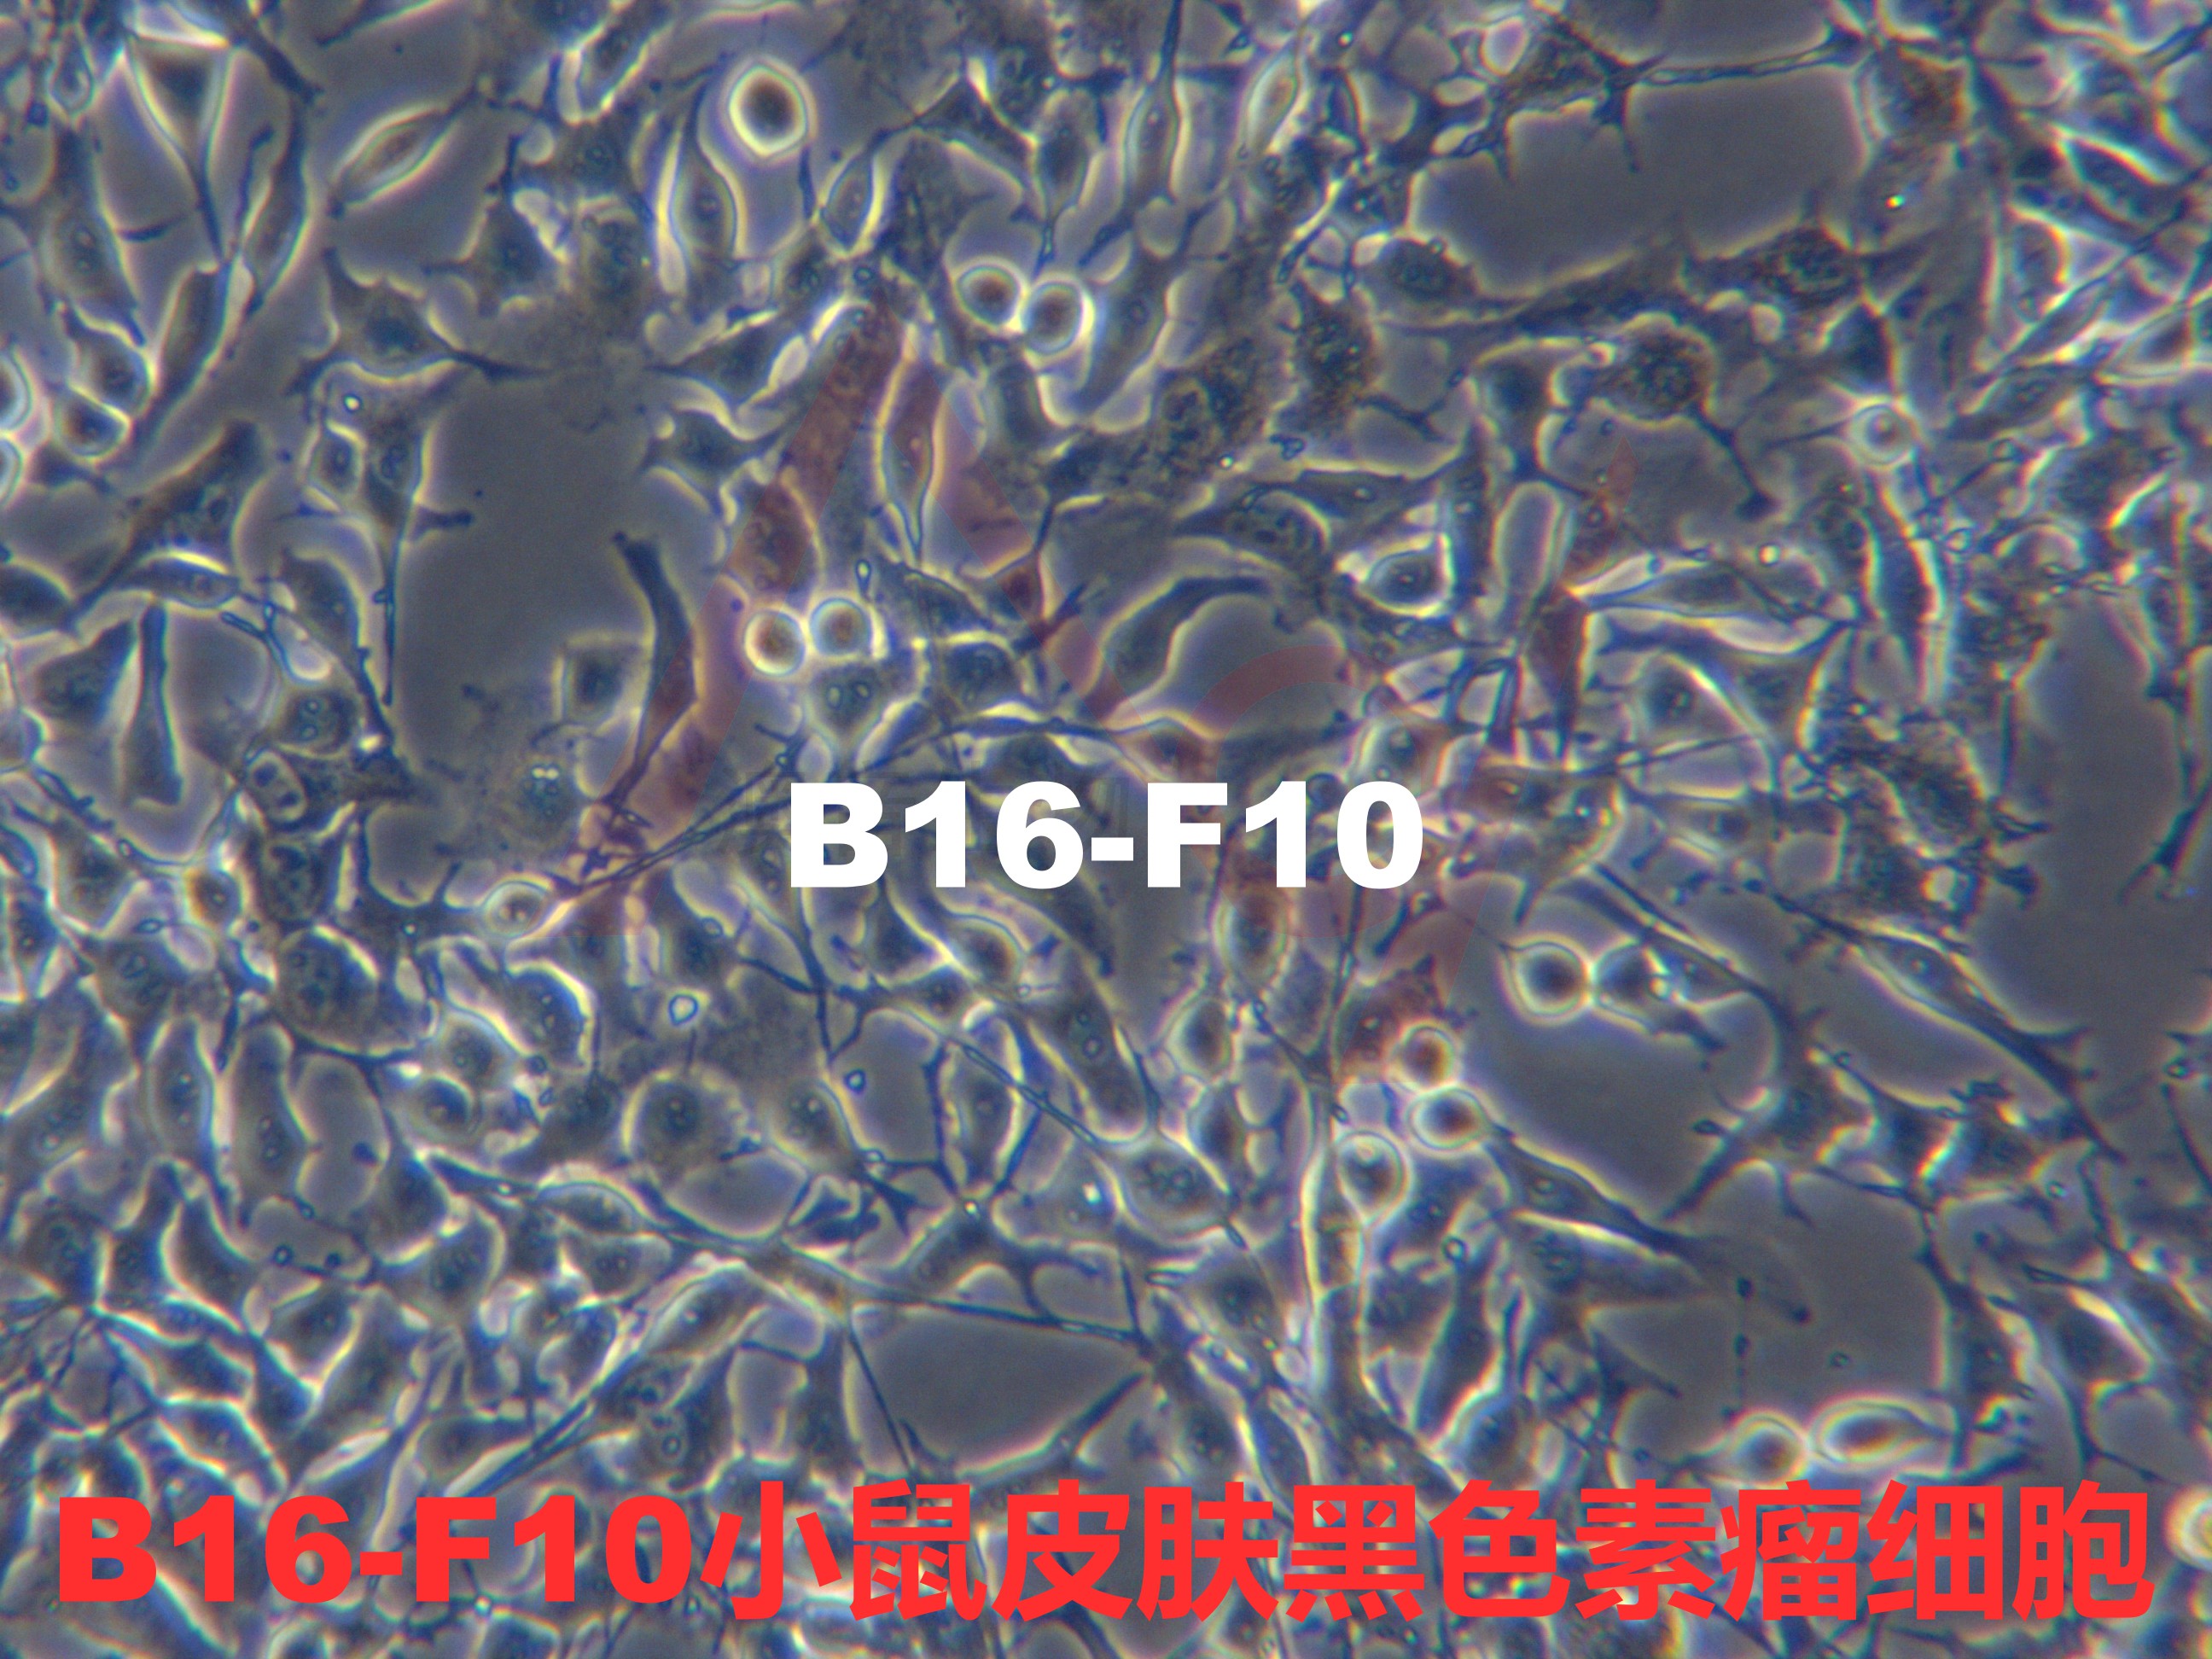 B16-F10[B16/F10; B16 F10; B16F10; B16 melanoma F10]小鼠皮肤黑色素瘤细胞